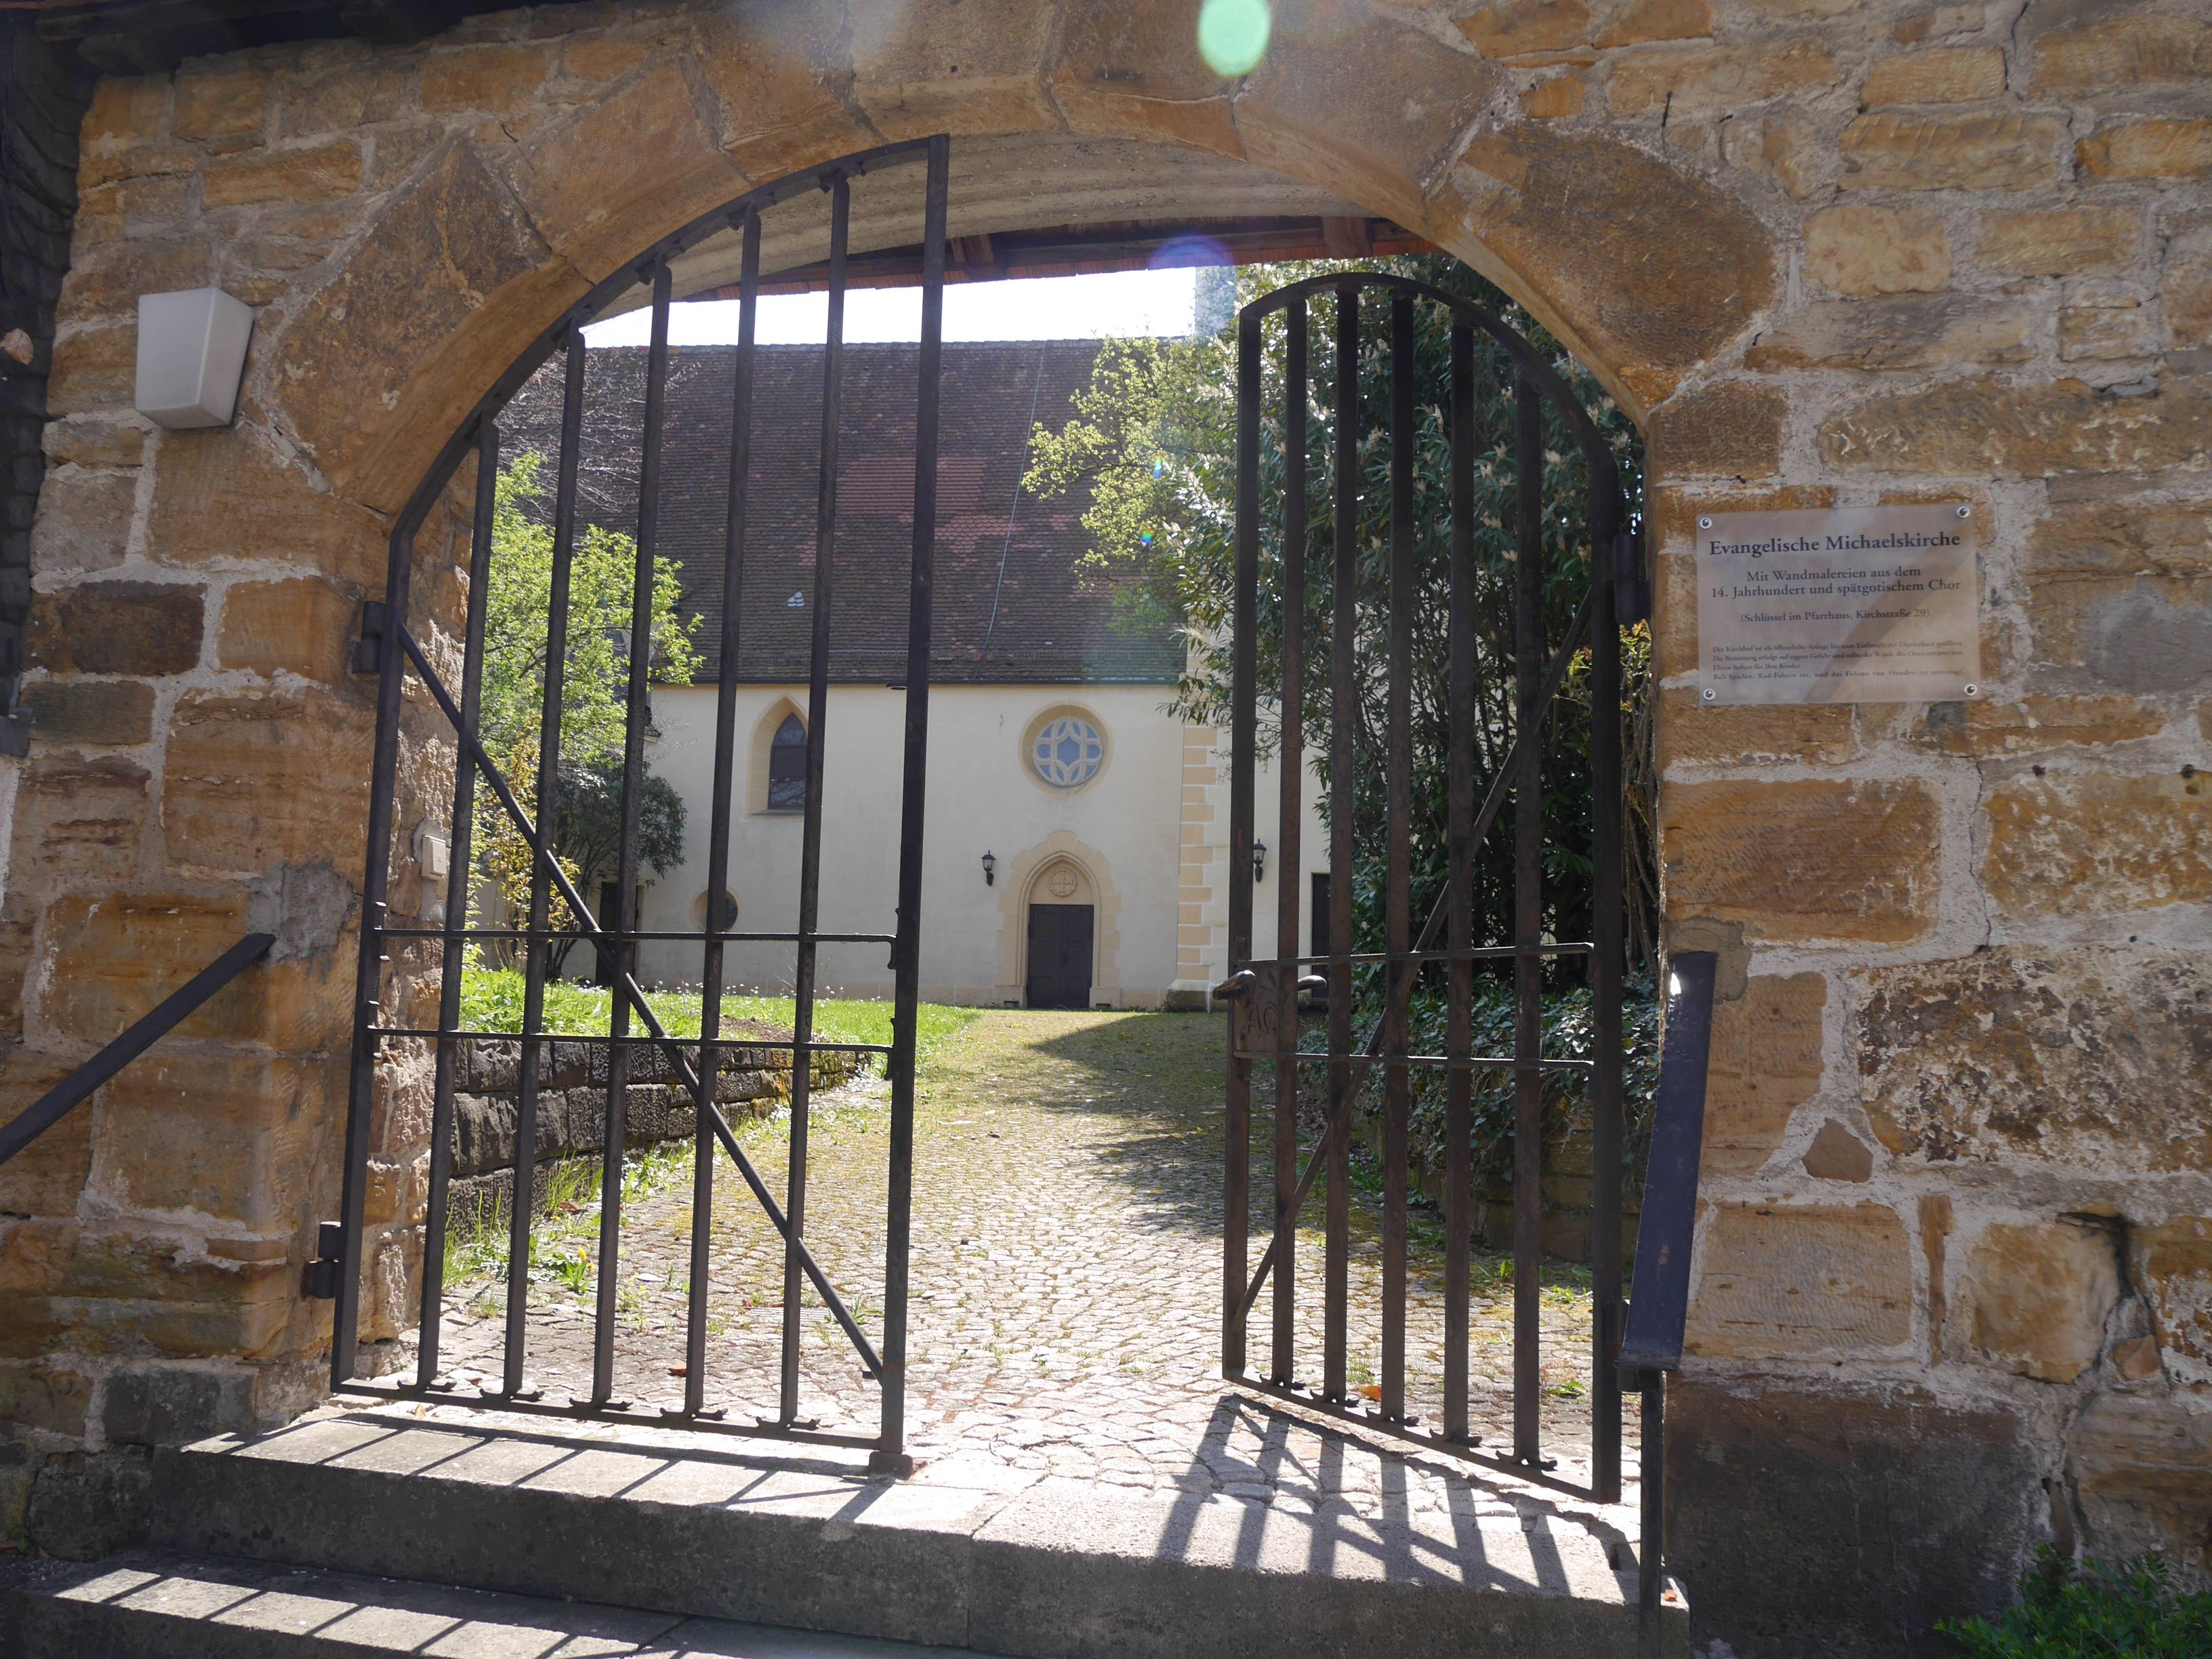  Eingang Michaelskirche 